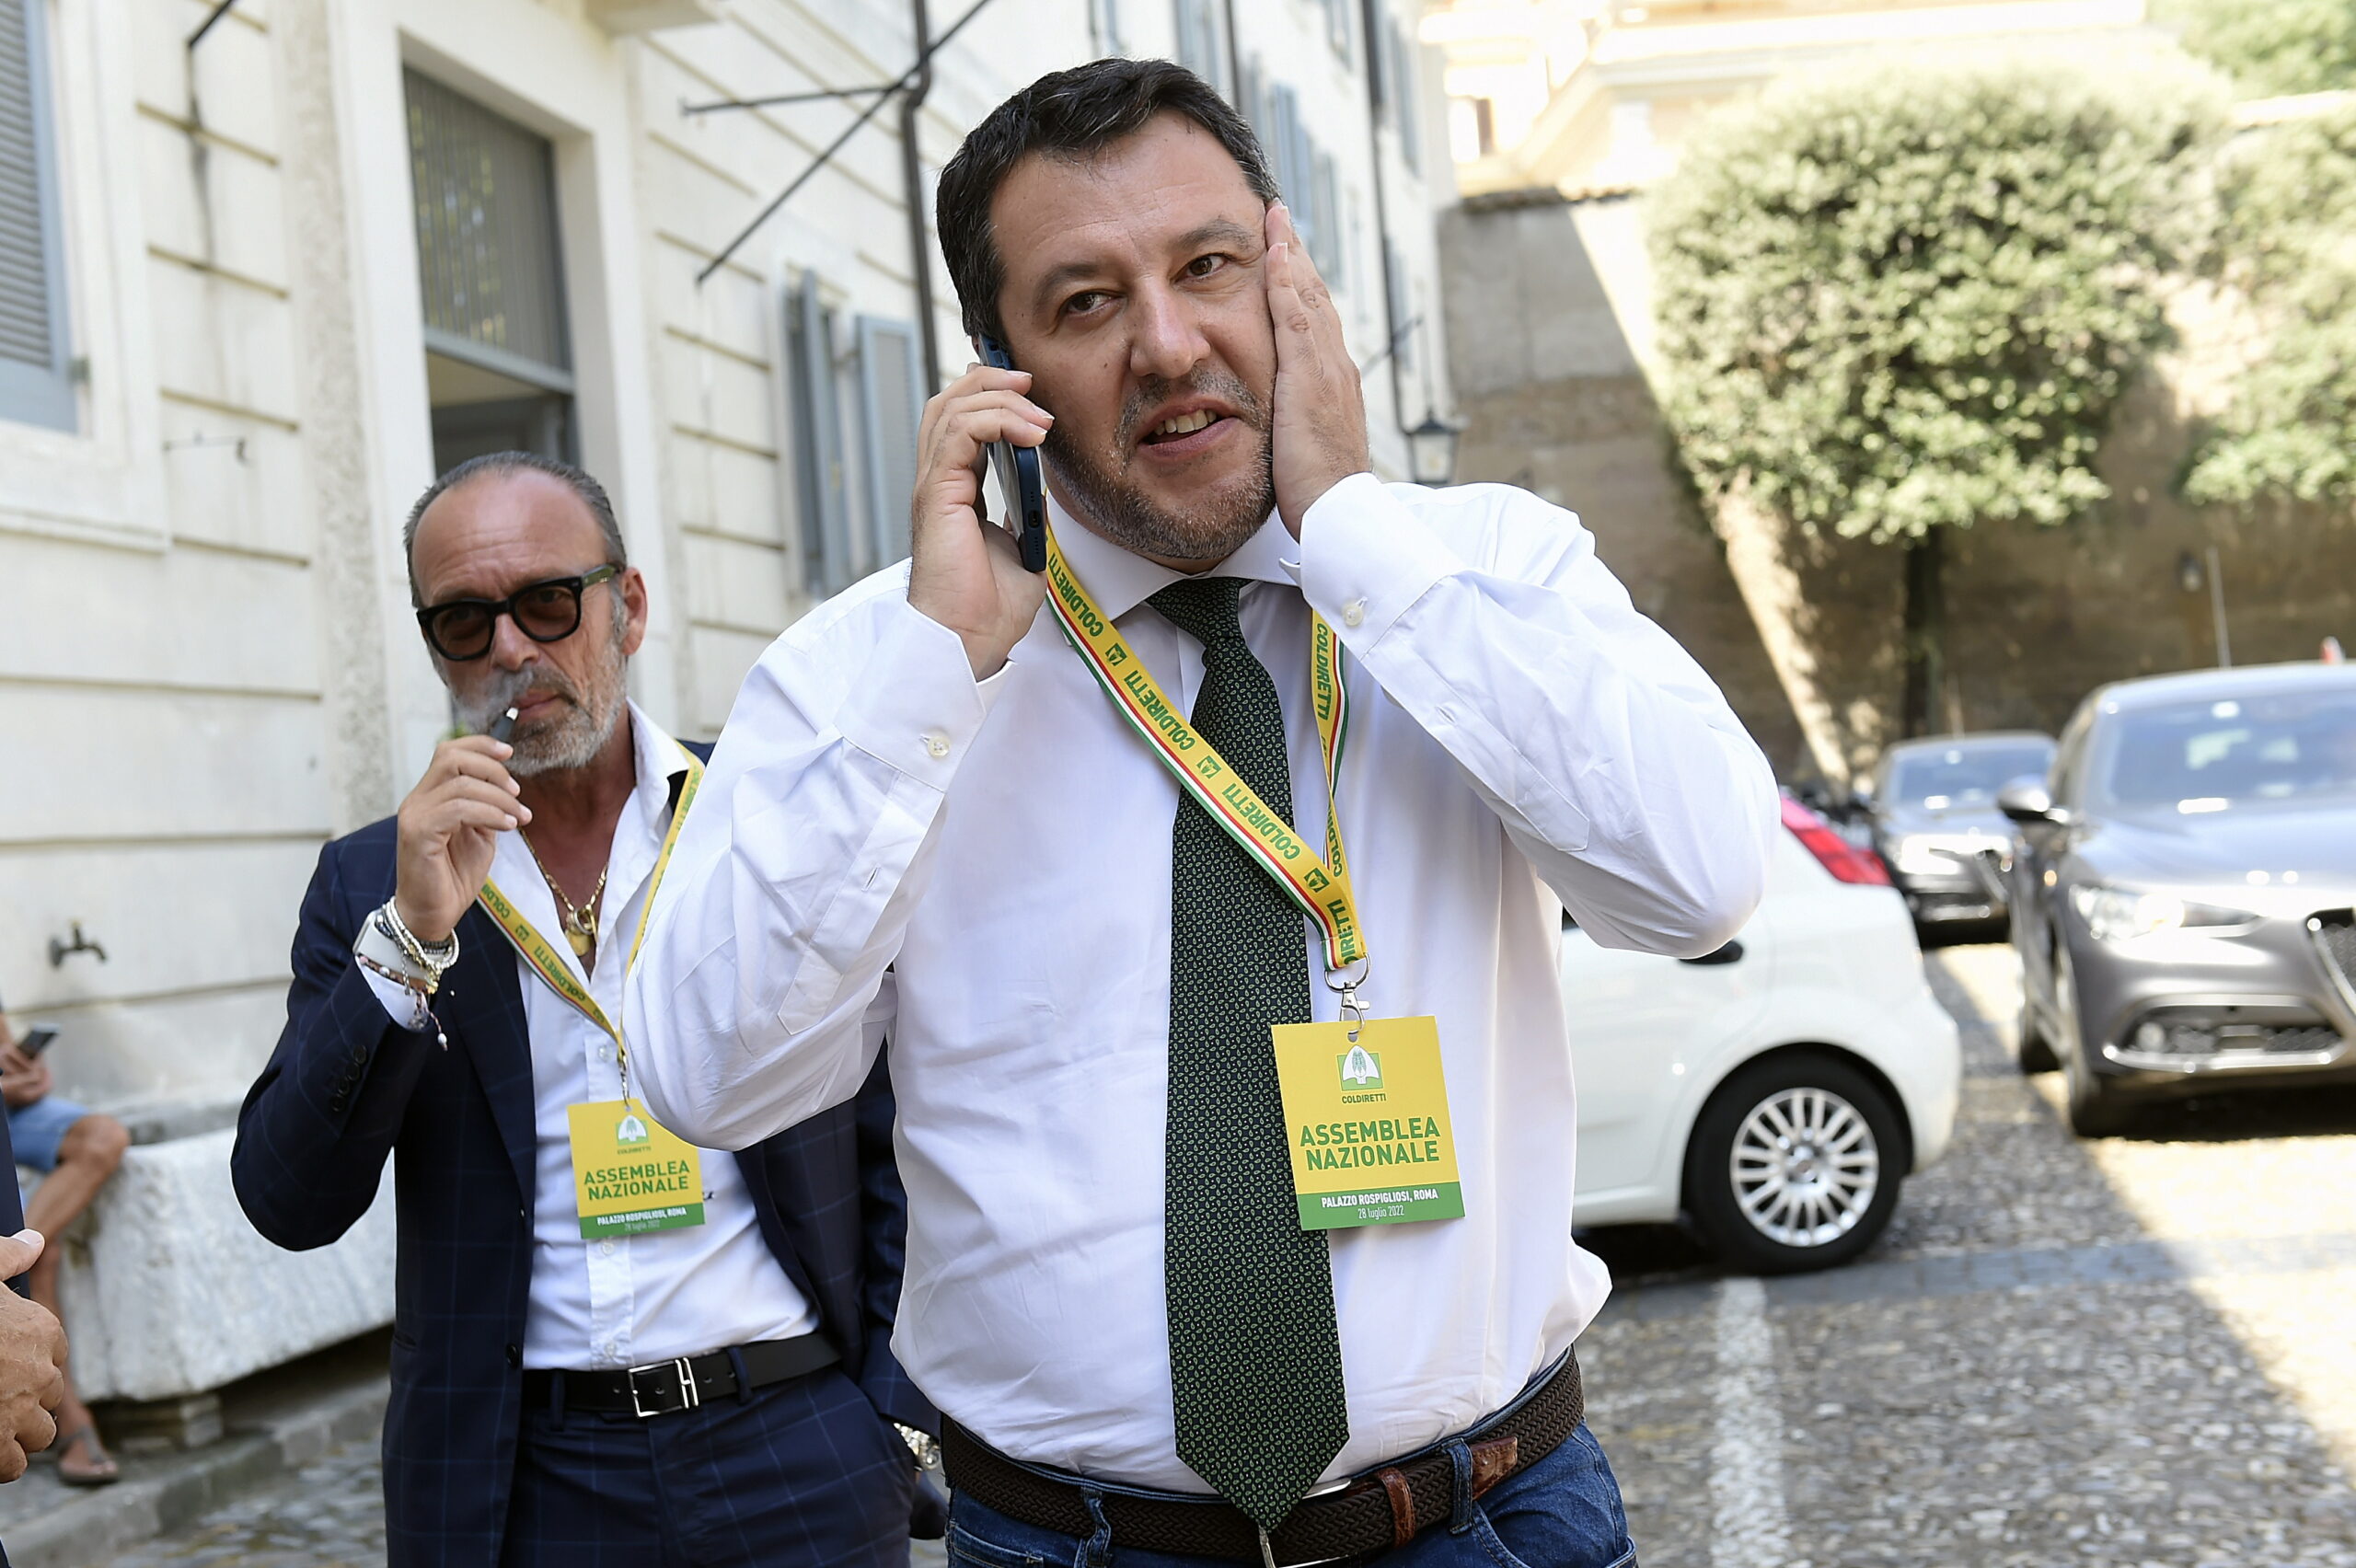 Quirinale e Credo, così Salvini e Berlusconi si complicano la vita da soli